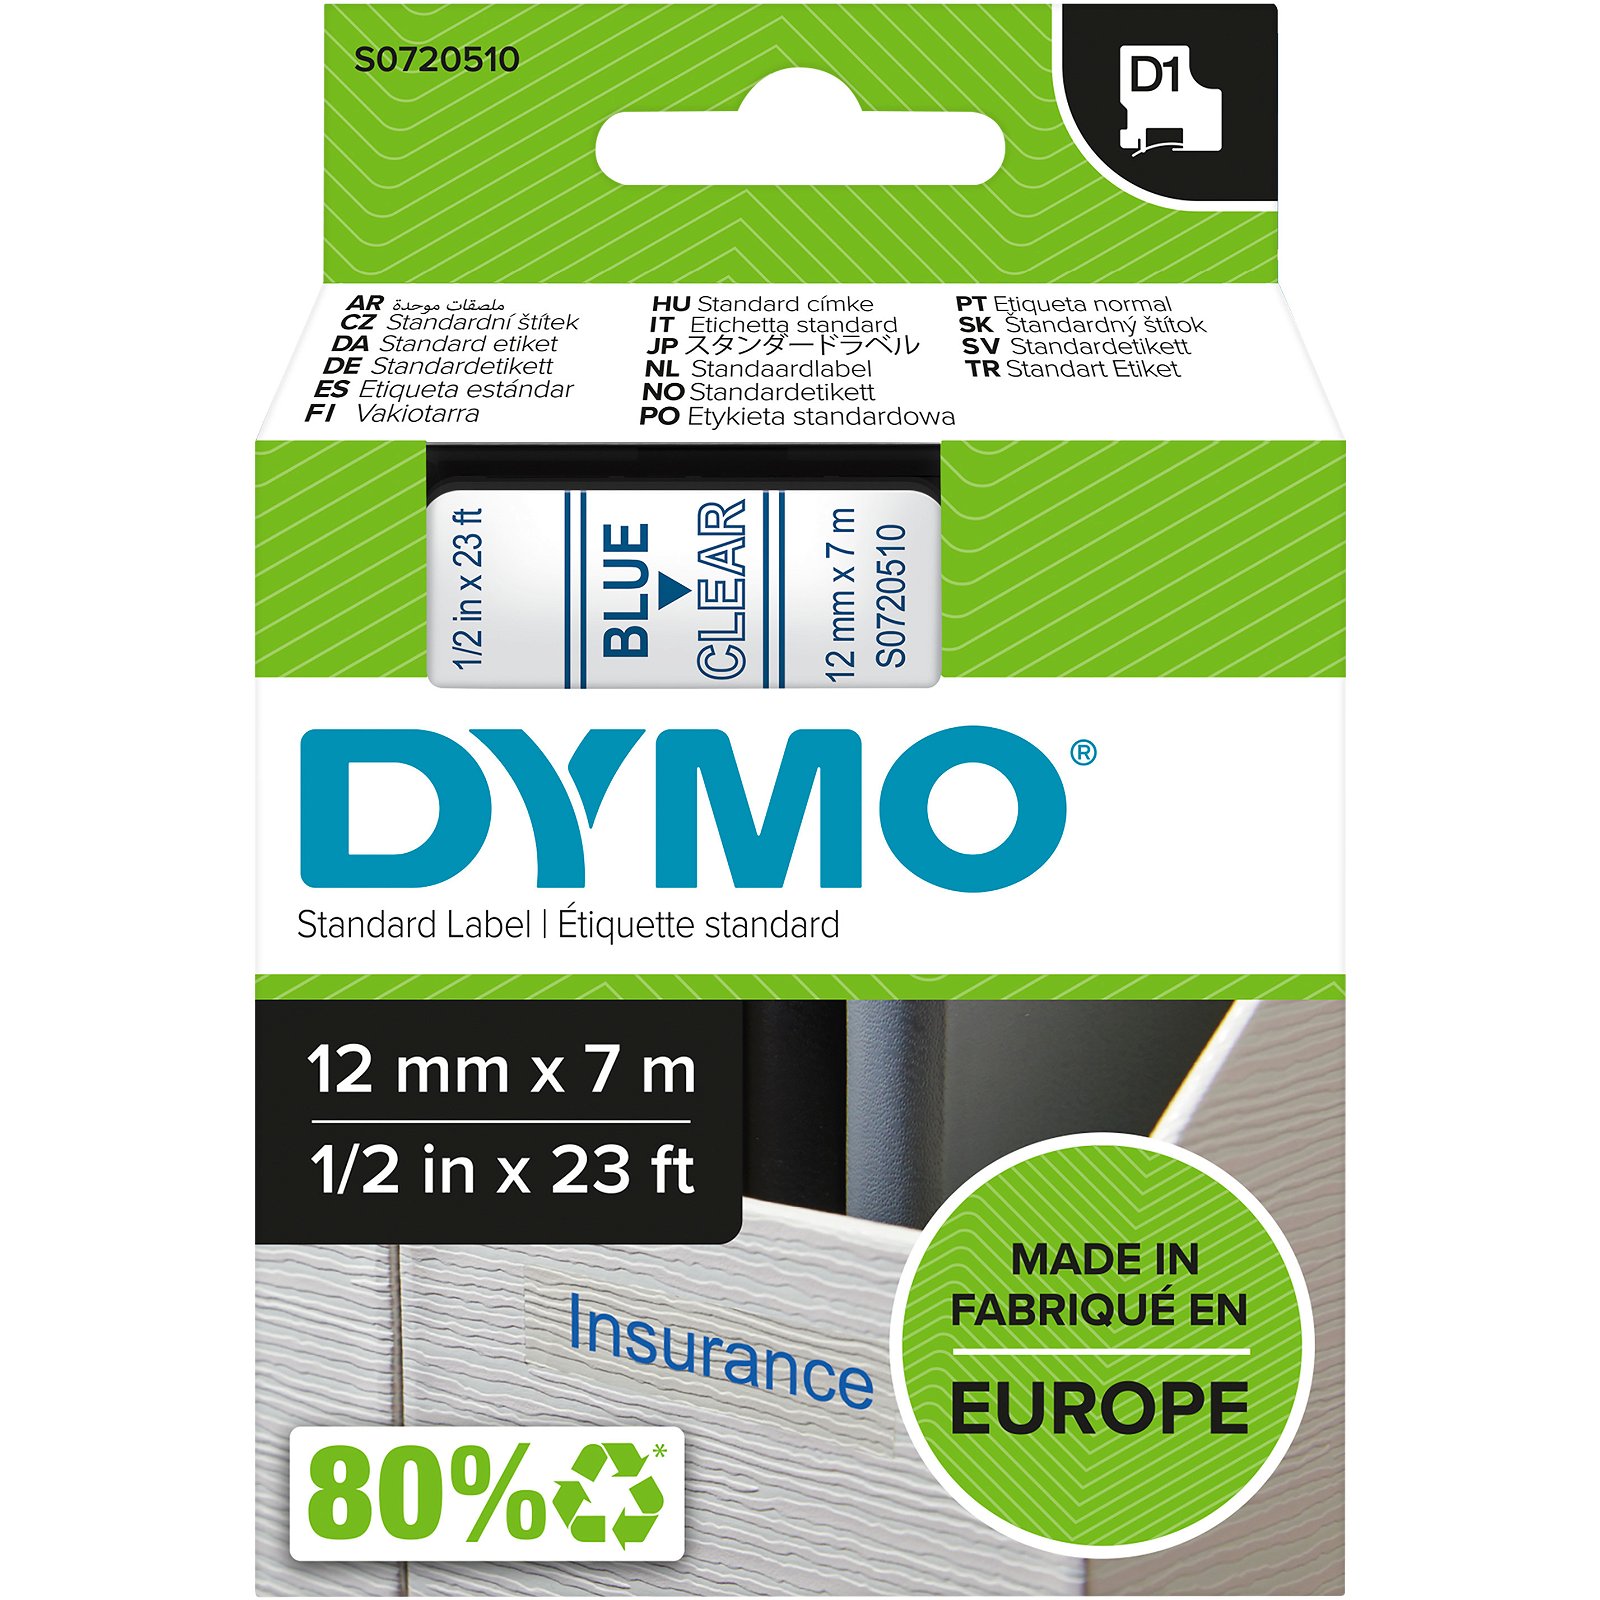 Dymo D1 standard tapekasette 12 mm bla;klar Polyester